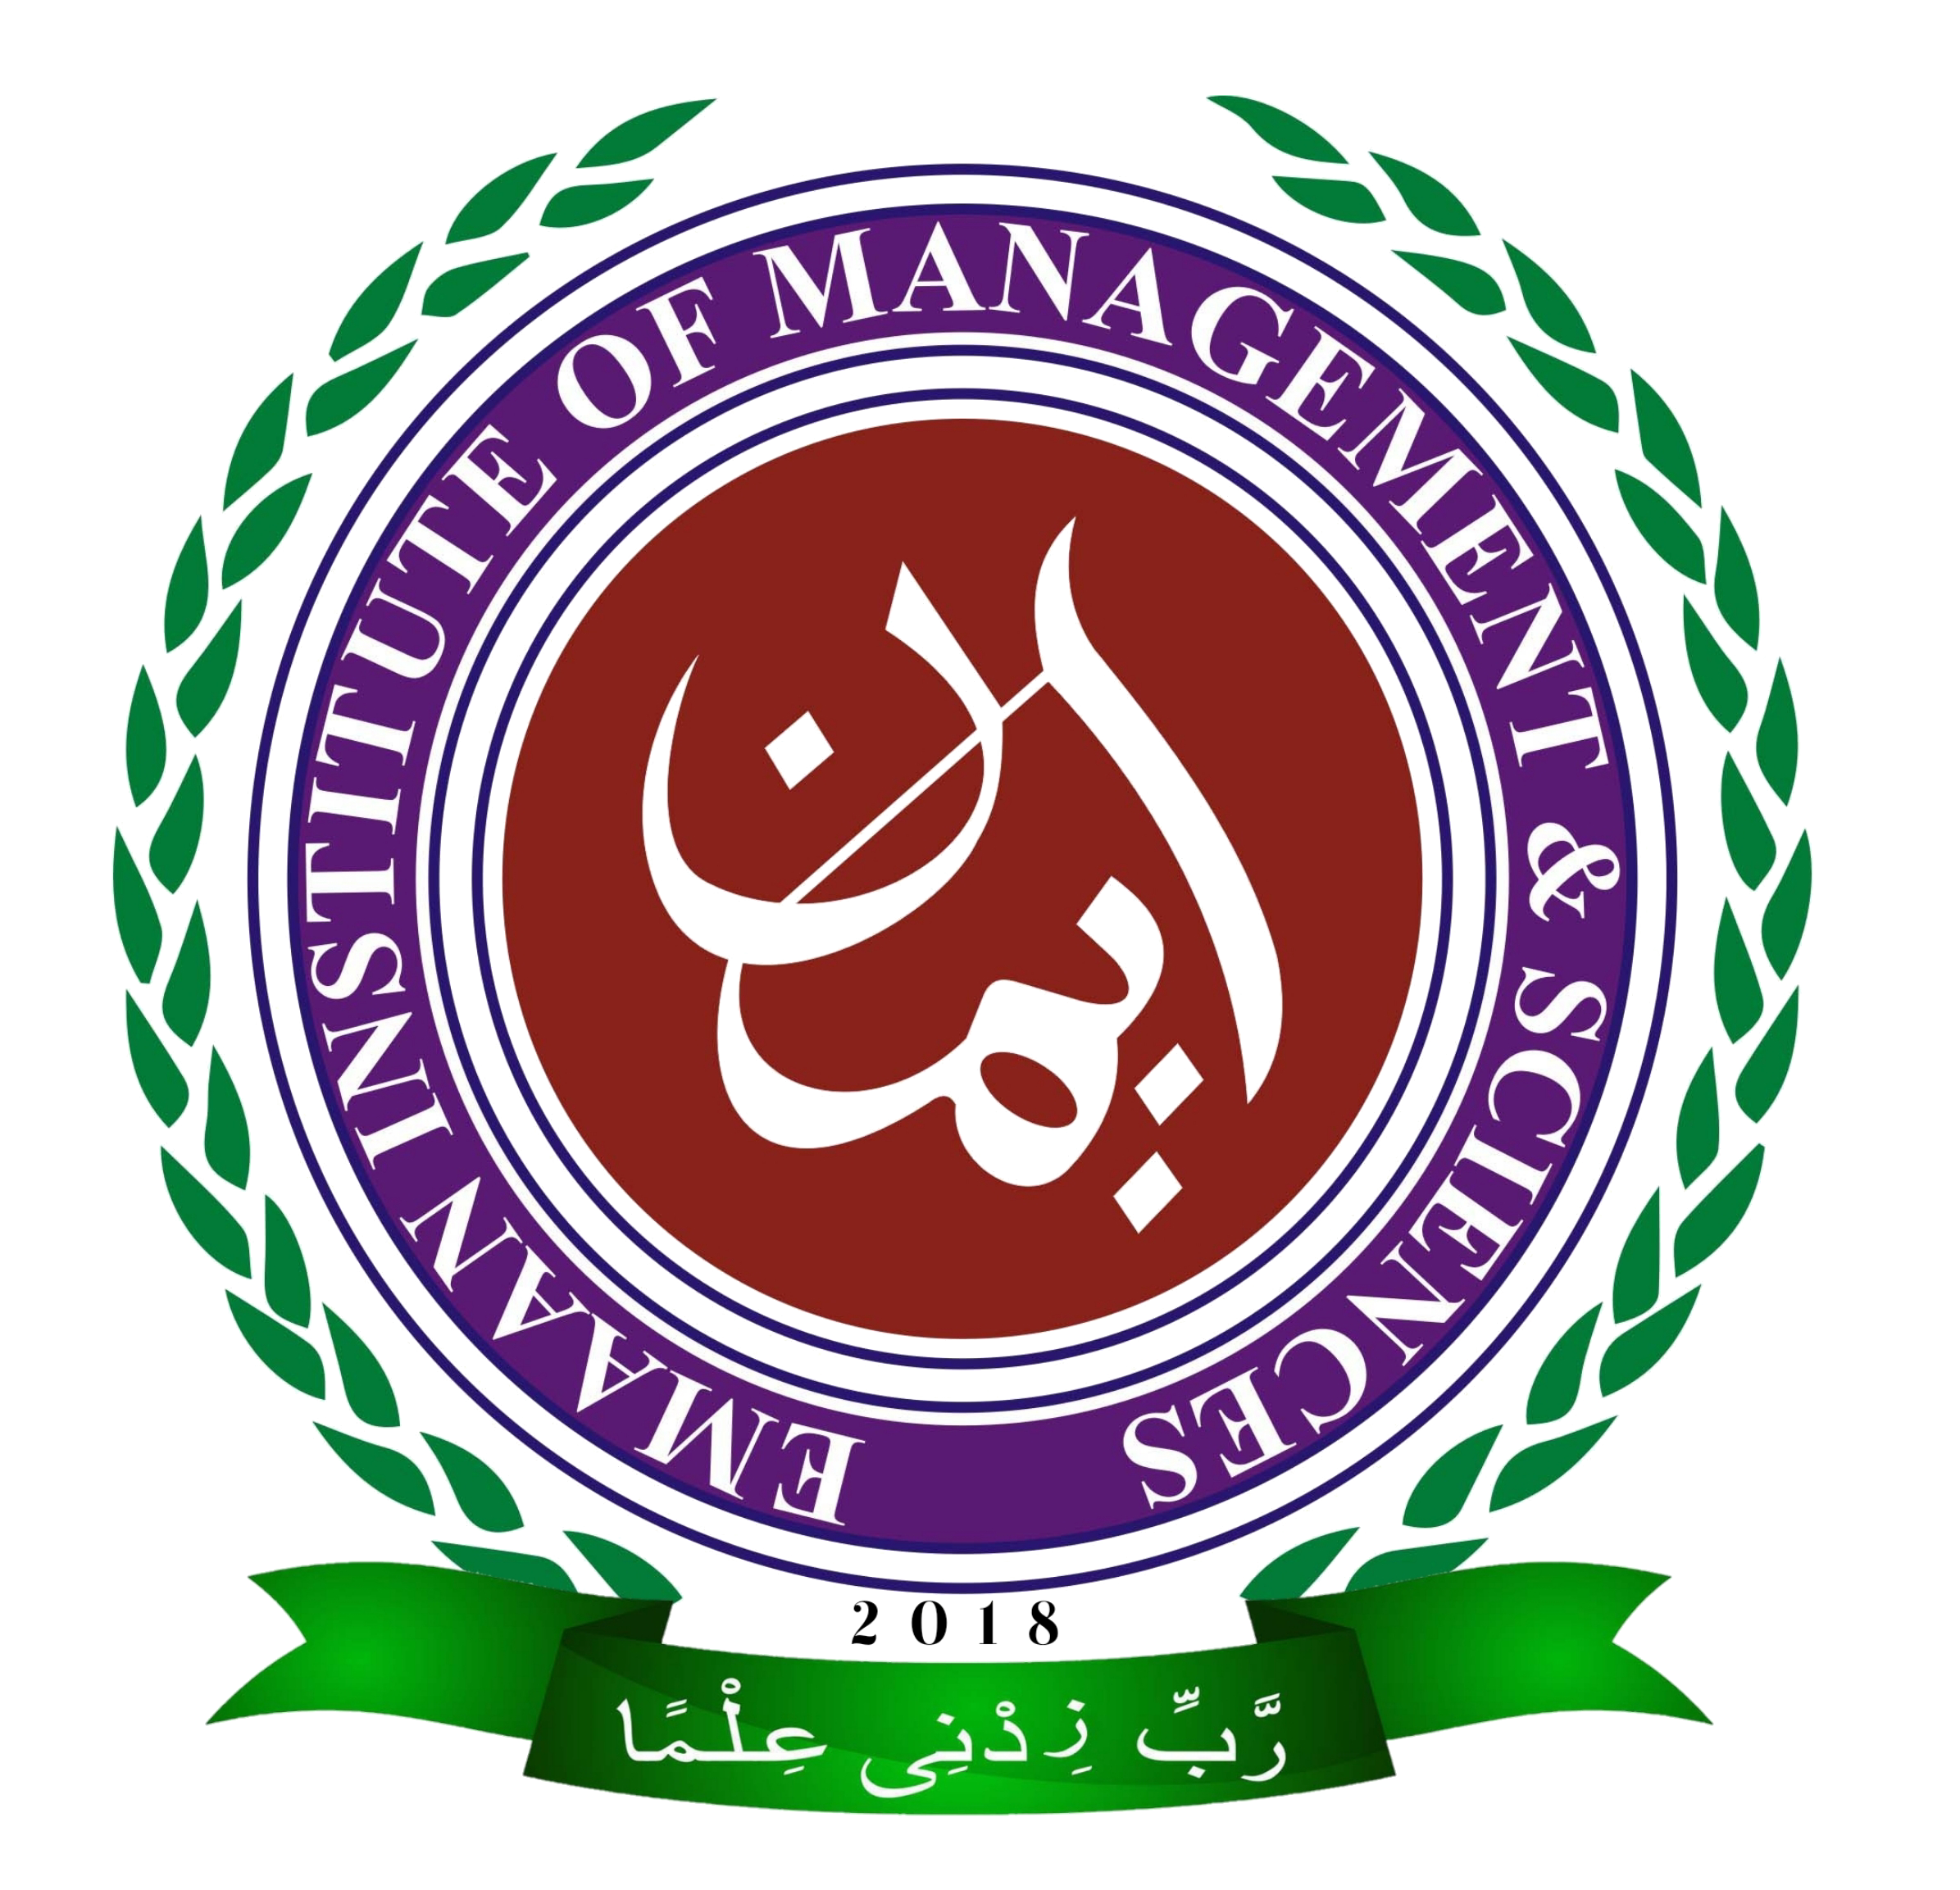 Emaan Institute Of Management & Sciences Karachi Admissions